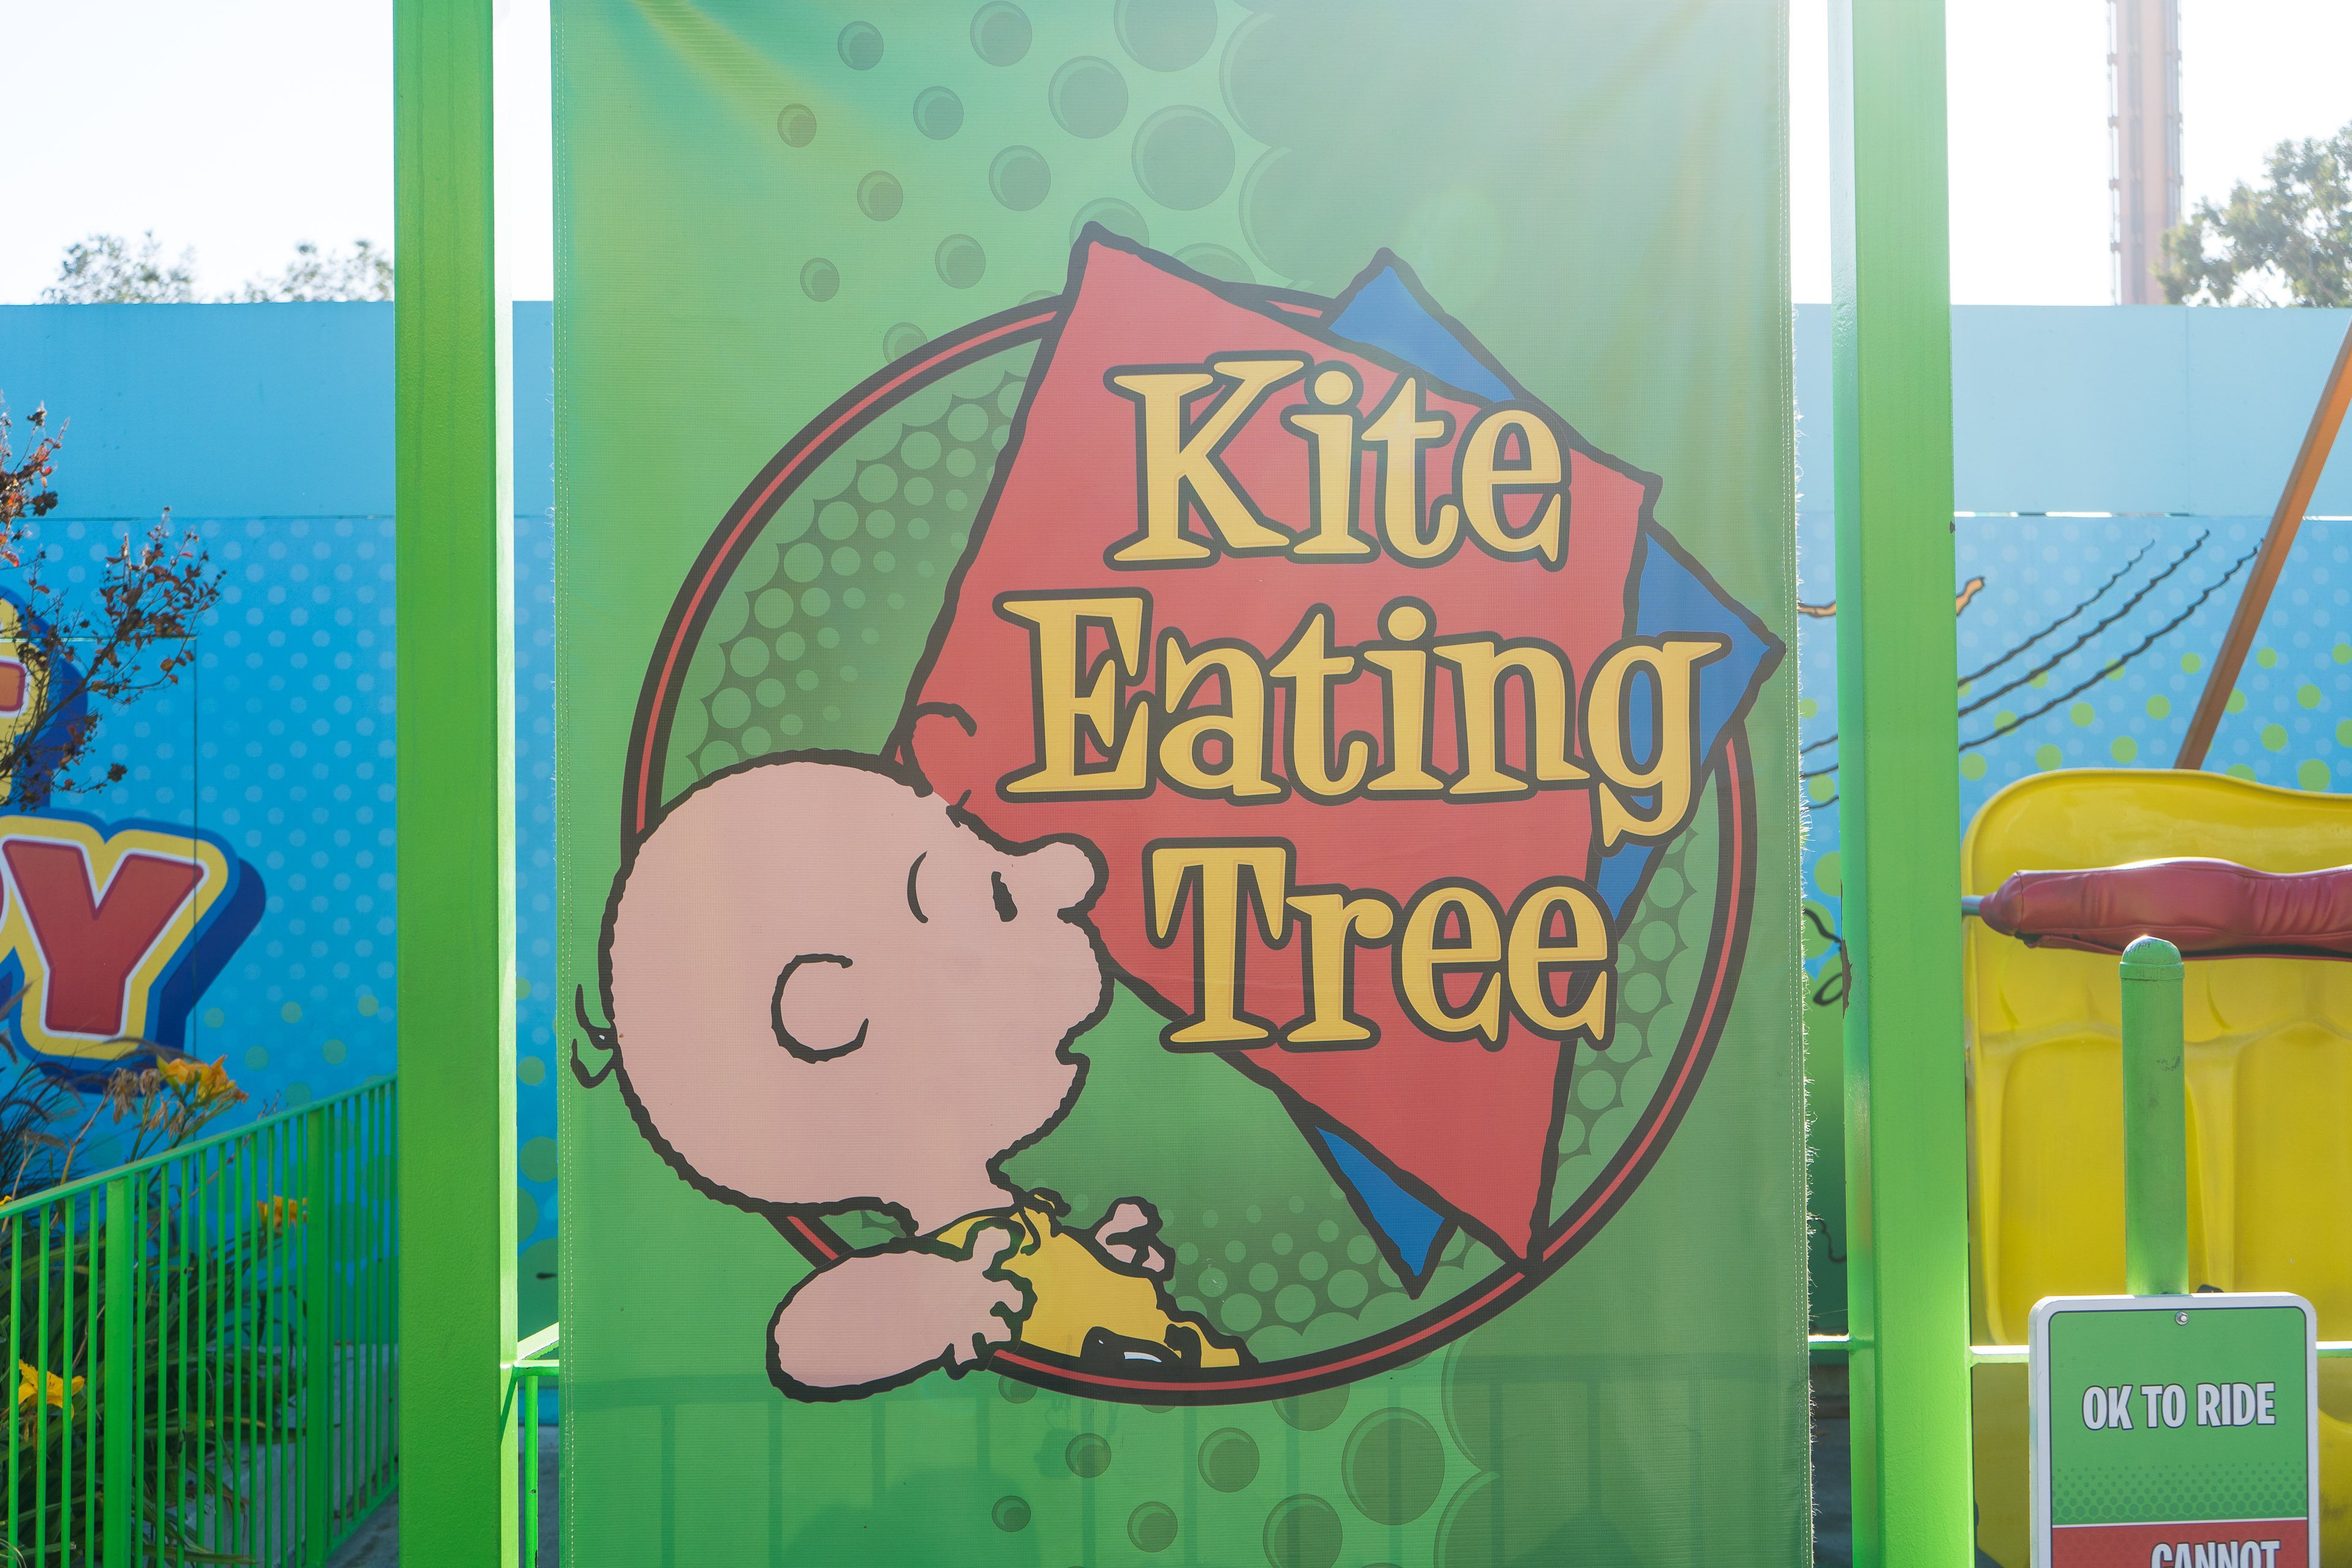 Kite Eating Tree